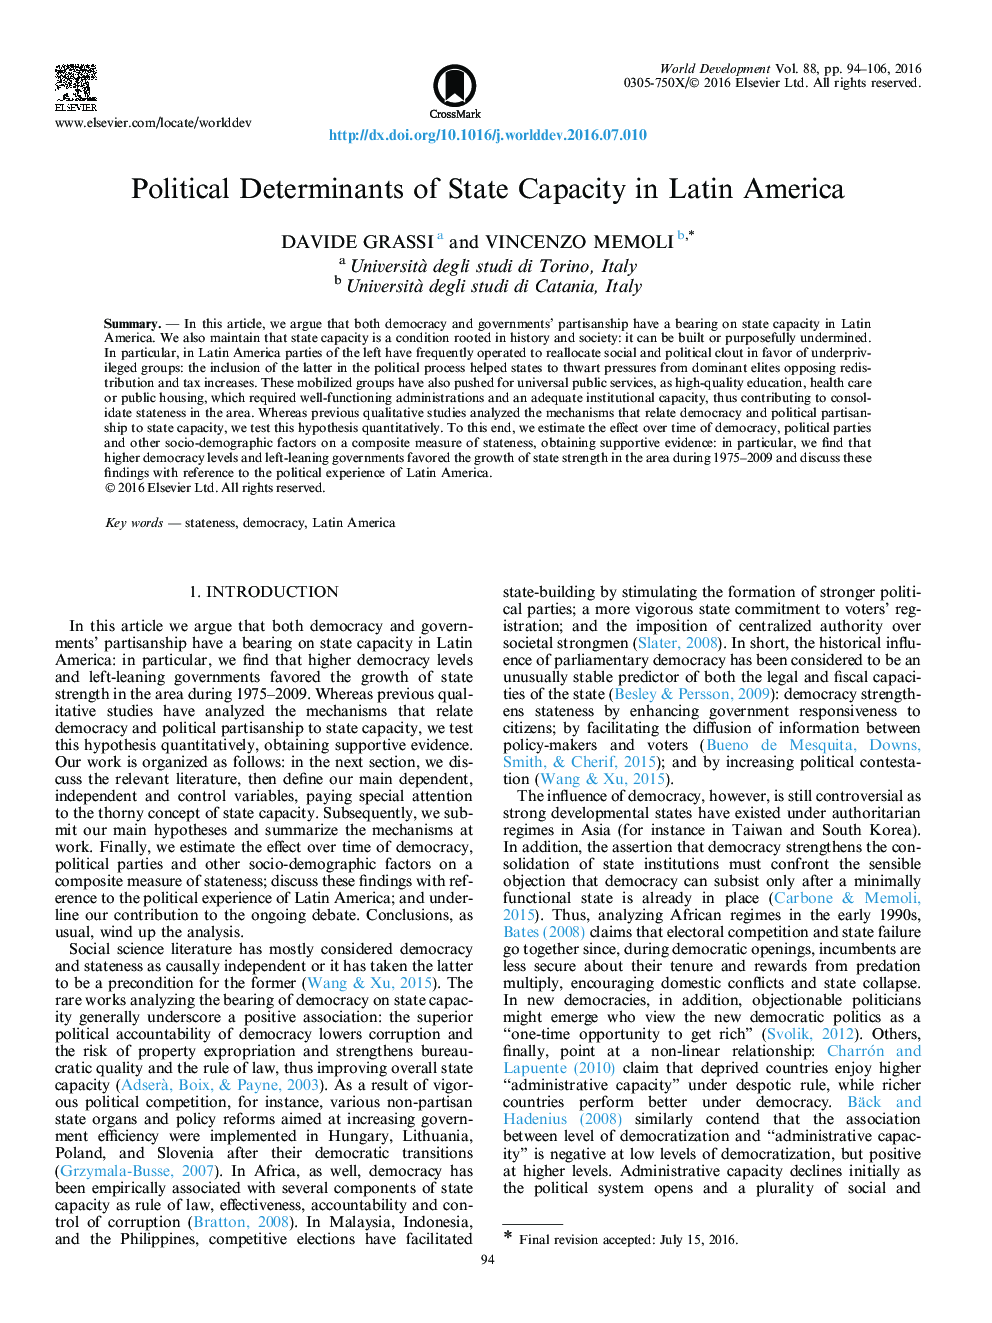 عوامل سیاسی ظرفیت دولت در امریکای لاتین